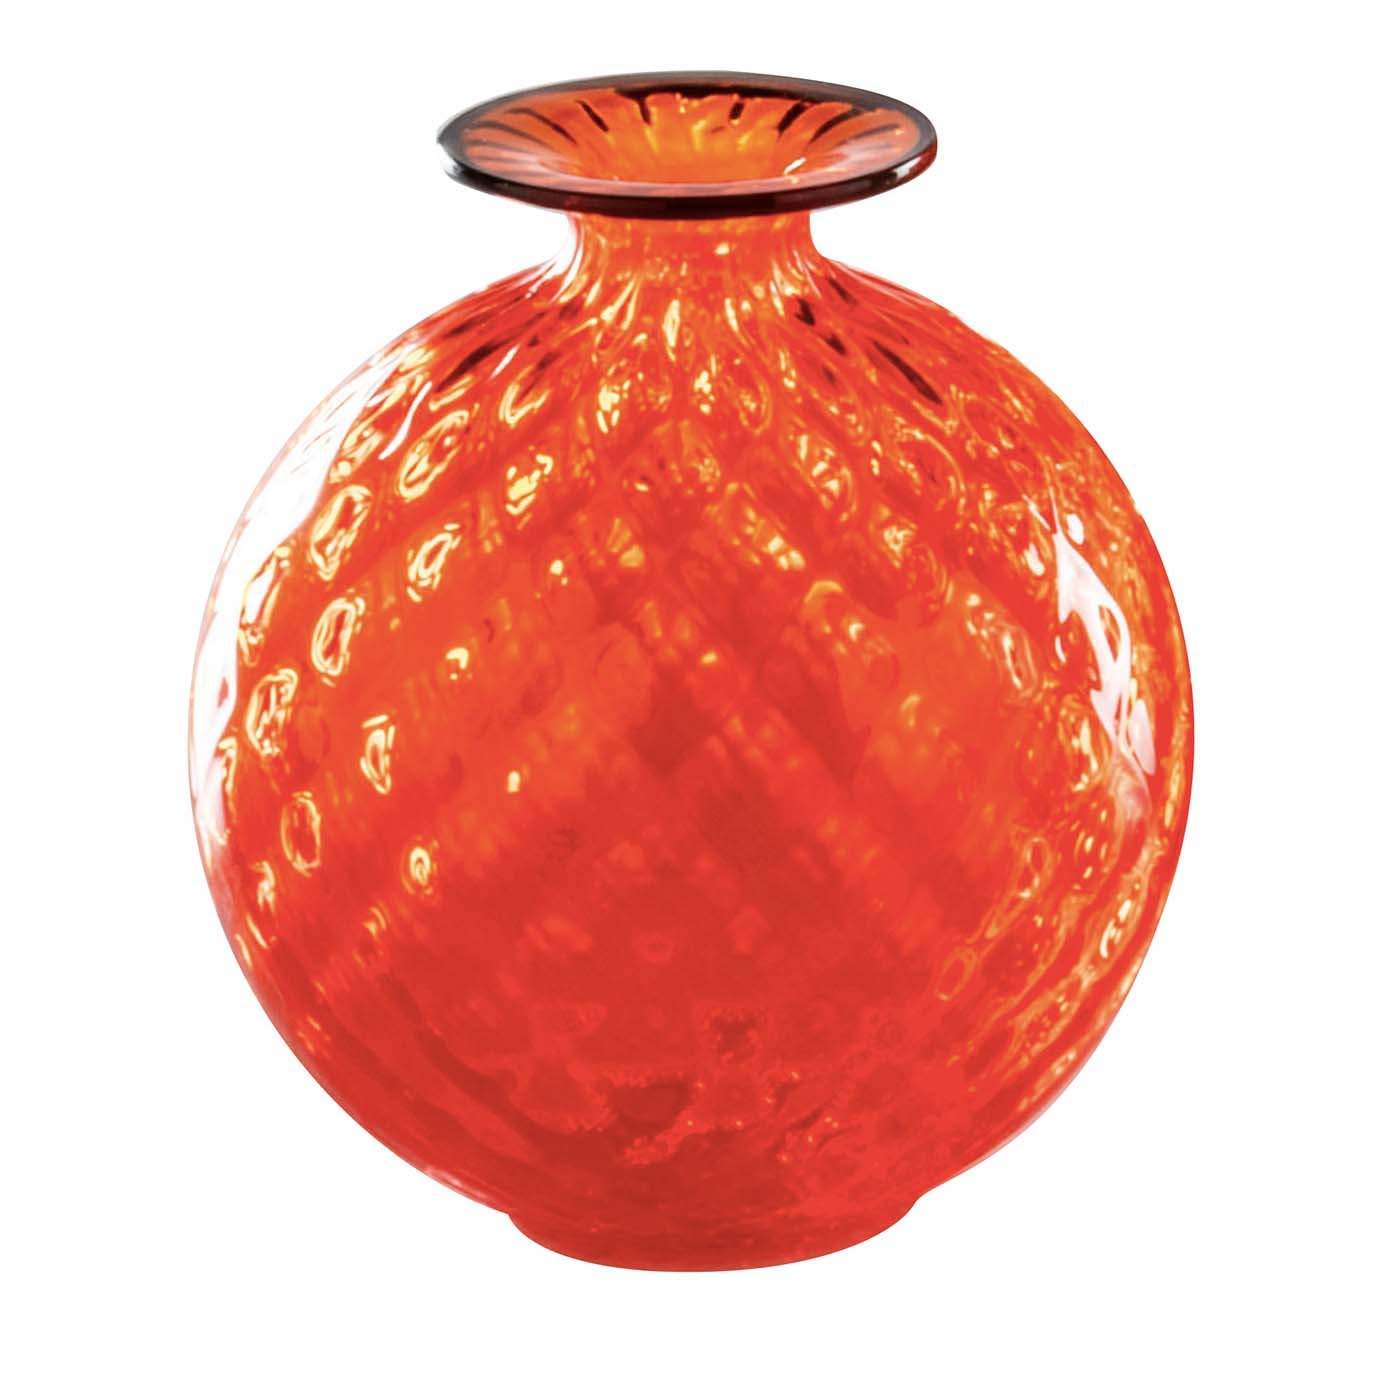 Monofiori Red Balloton Vase - Venini